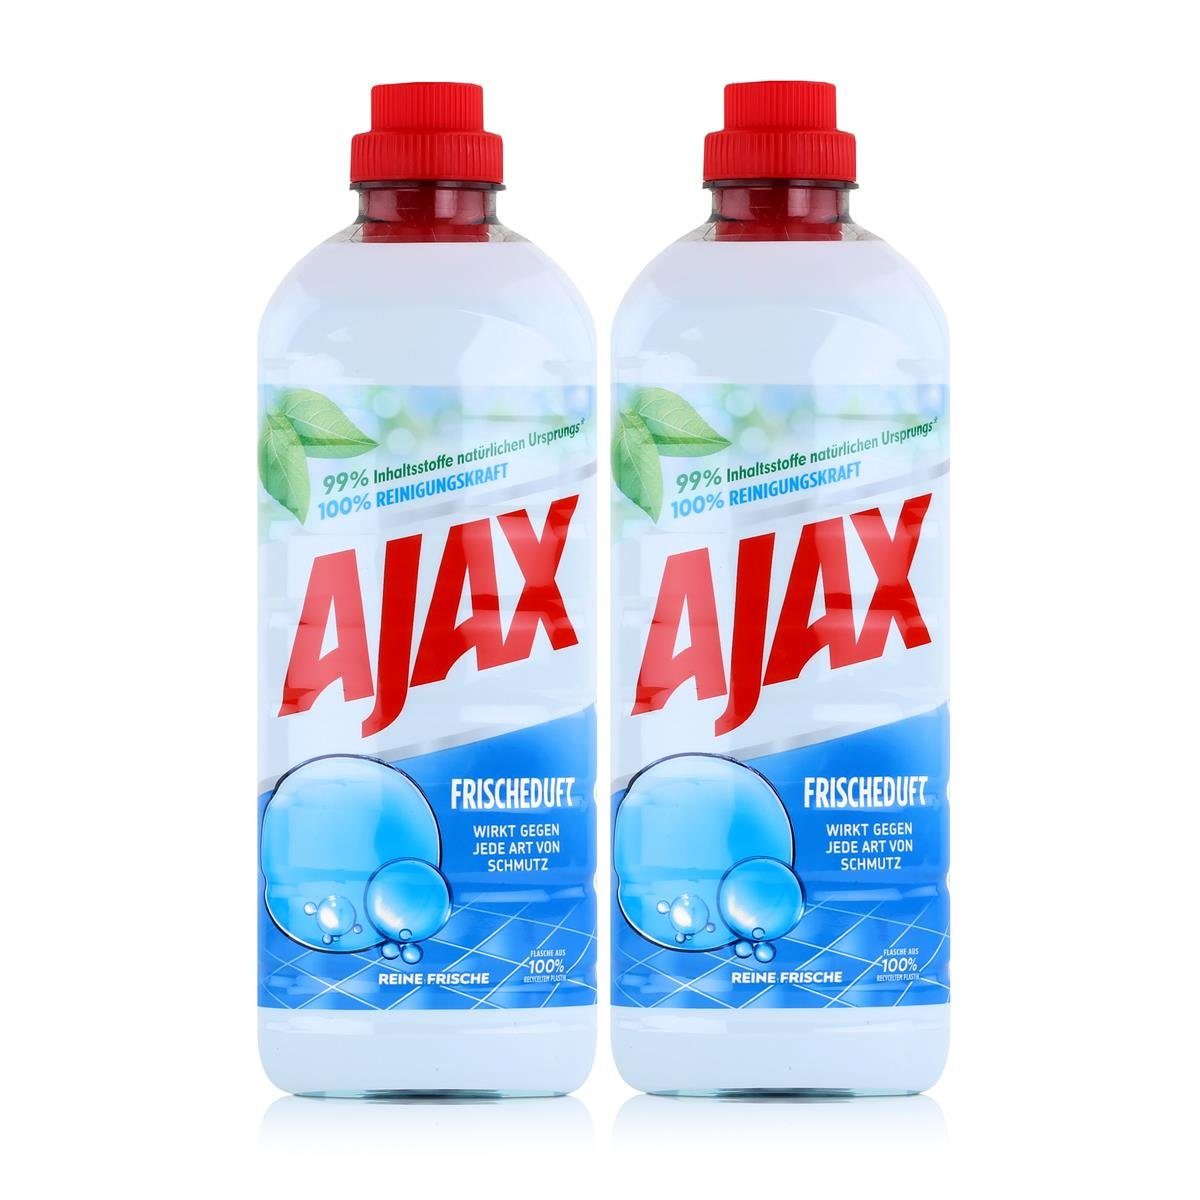 AJAX Ajax Allzweckreiniger Reine Frische 1 Liter - Bodenreiniger (2er Pack) Allzweckreiniger